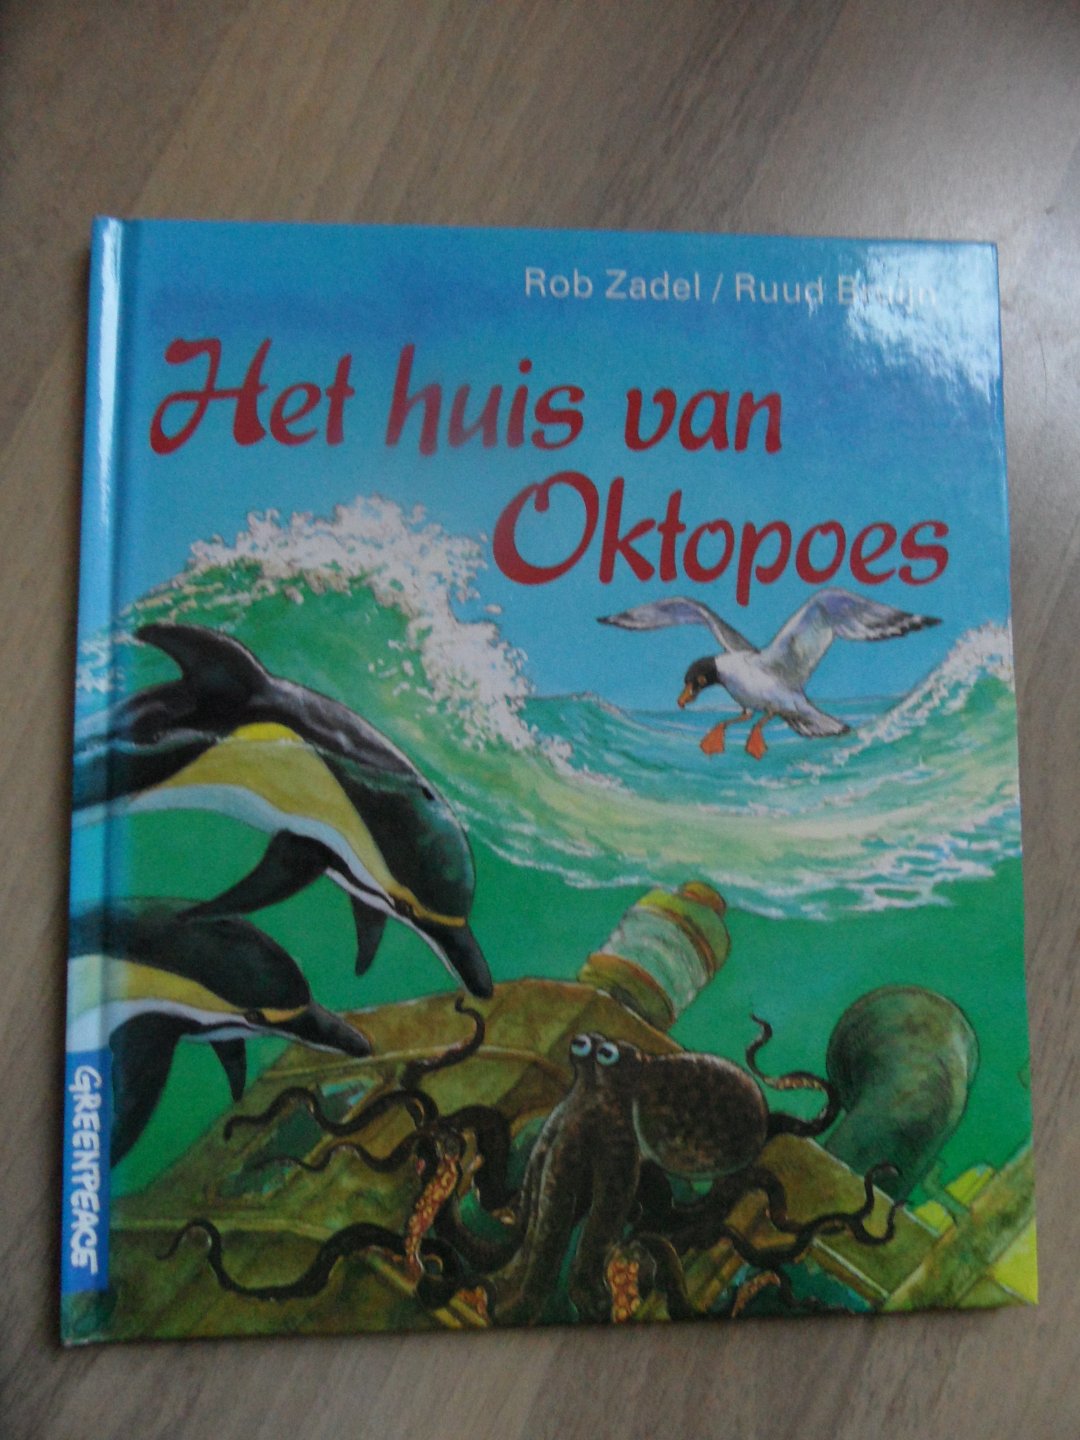 Zadel, Rob & Bruijn, Ruud - Het huis van Oktopoes